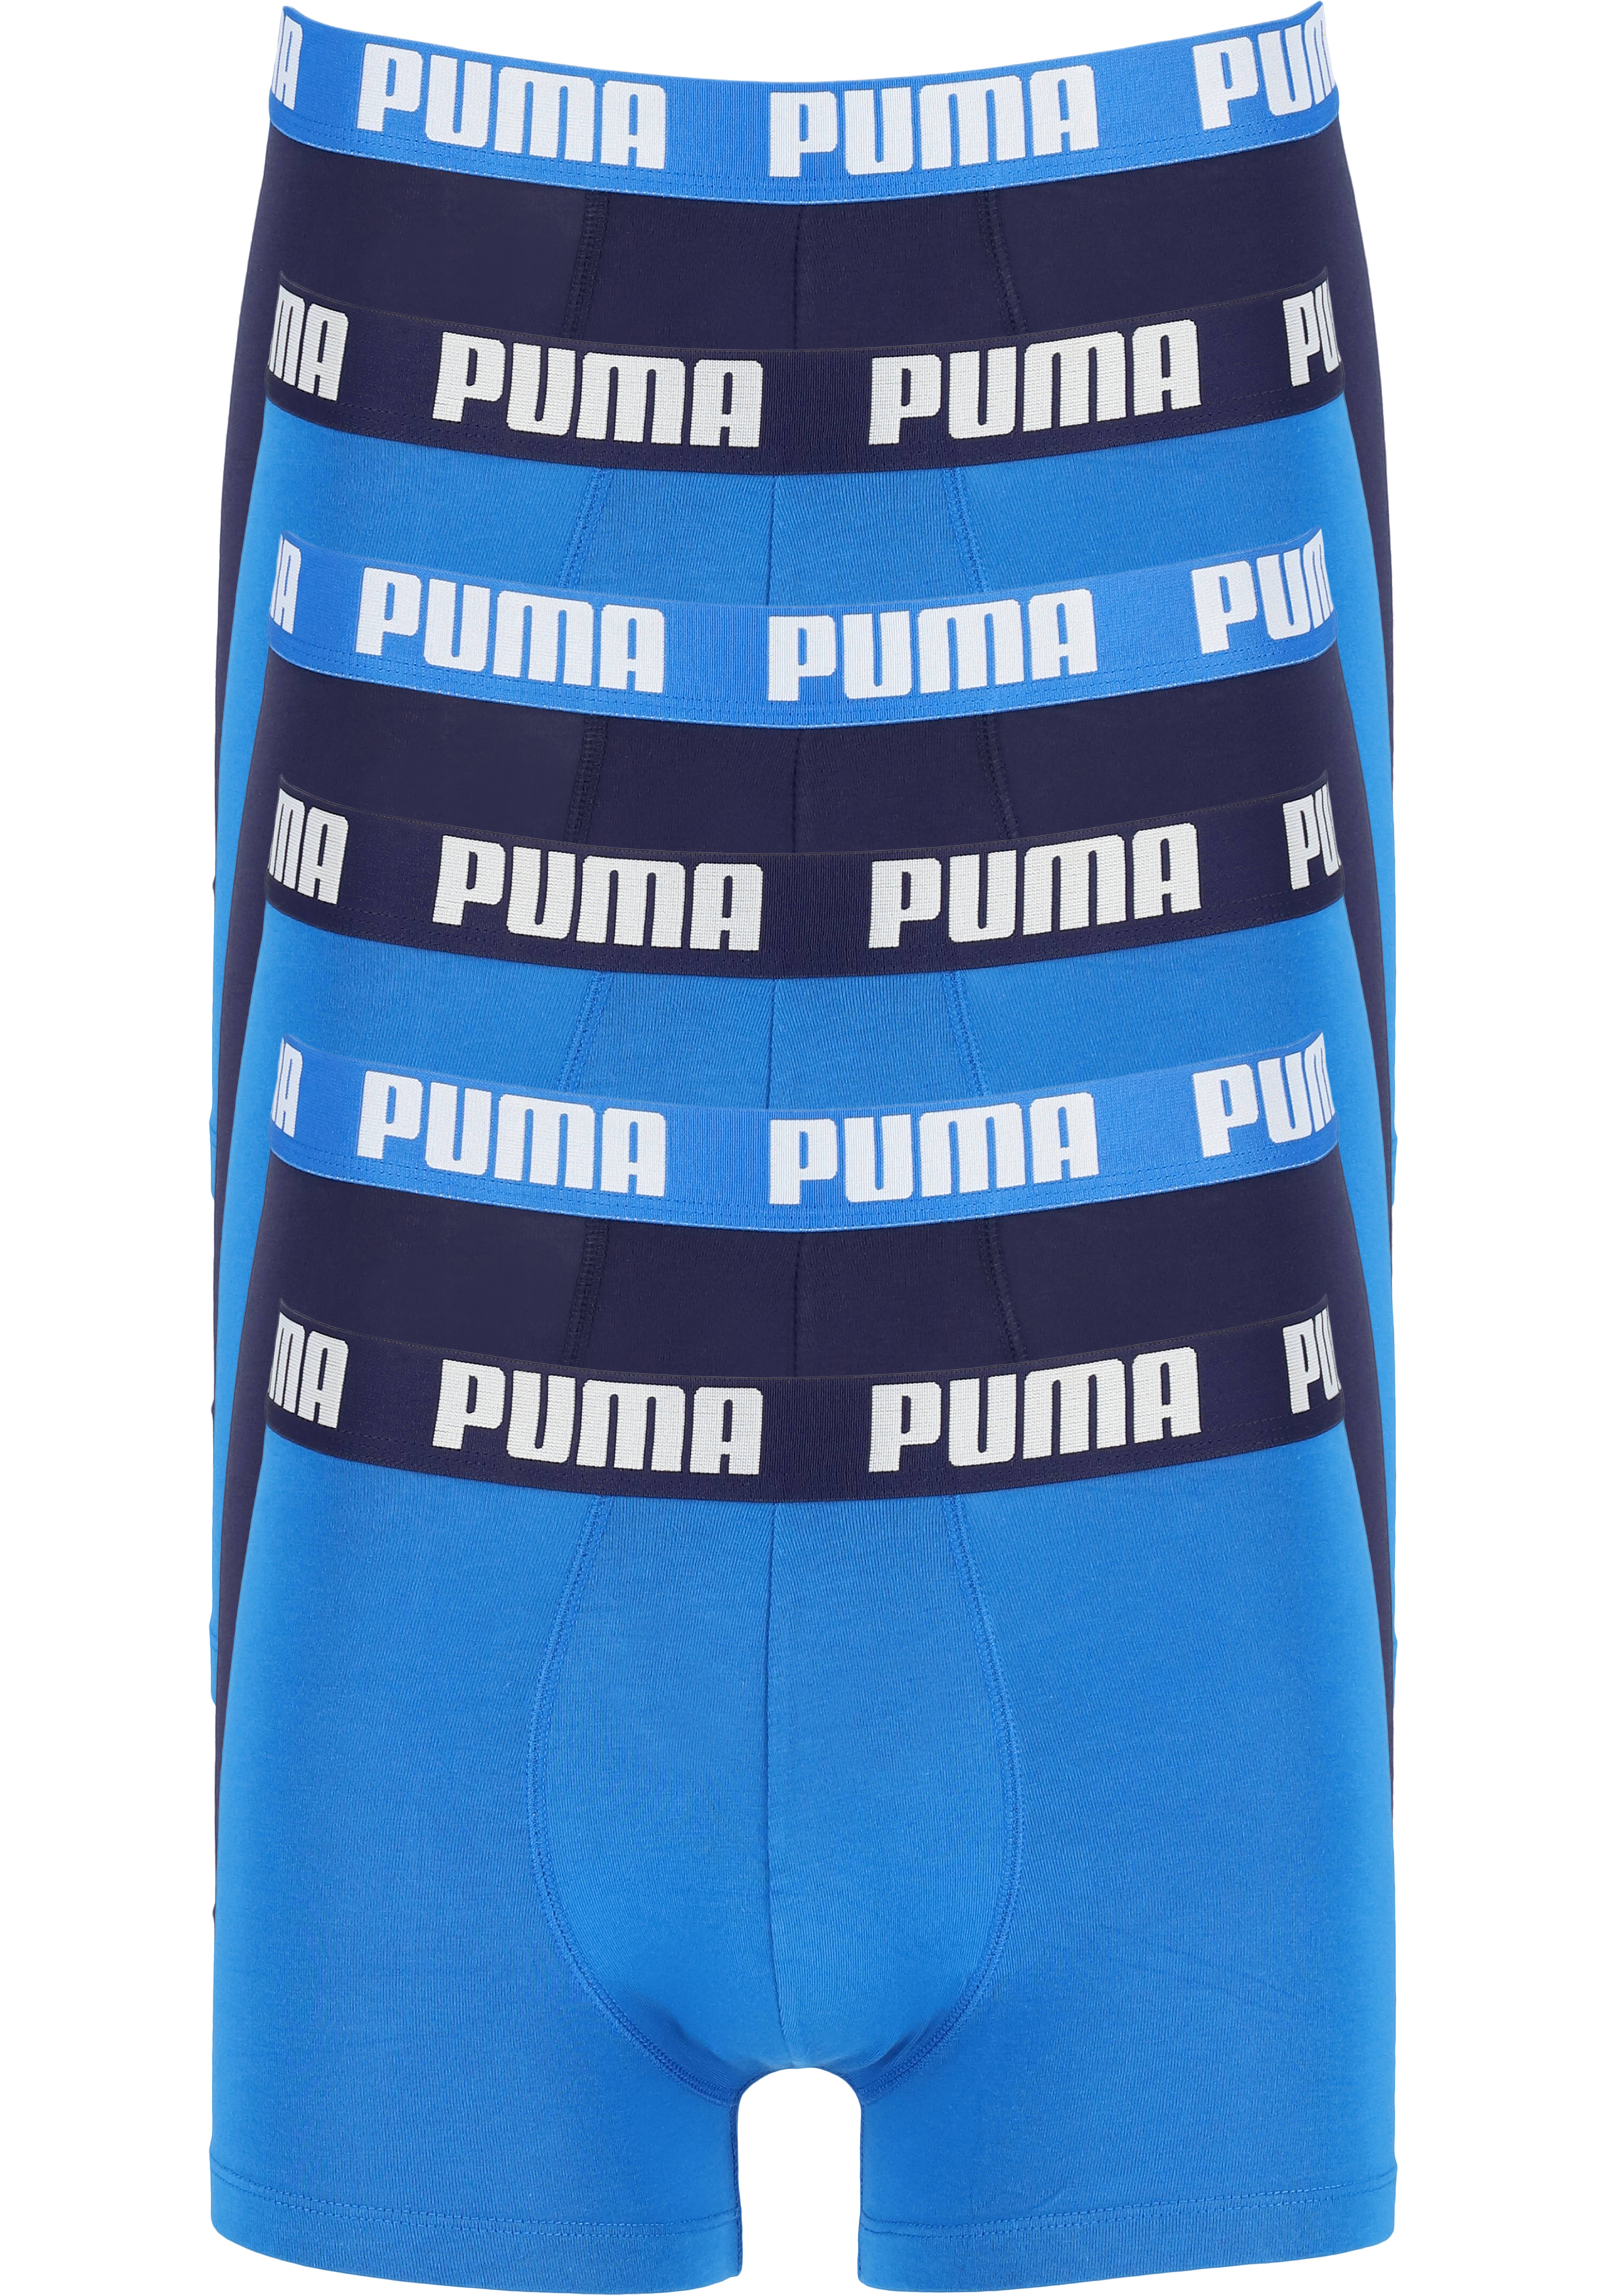 Puma Basic Boxer heren (6-pack), licht- en donkerblauw